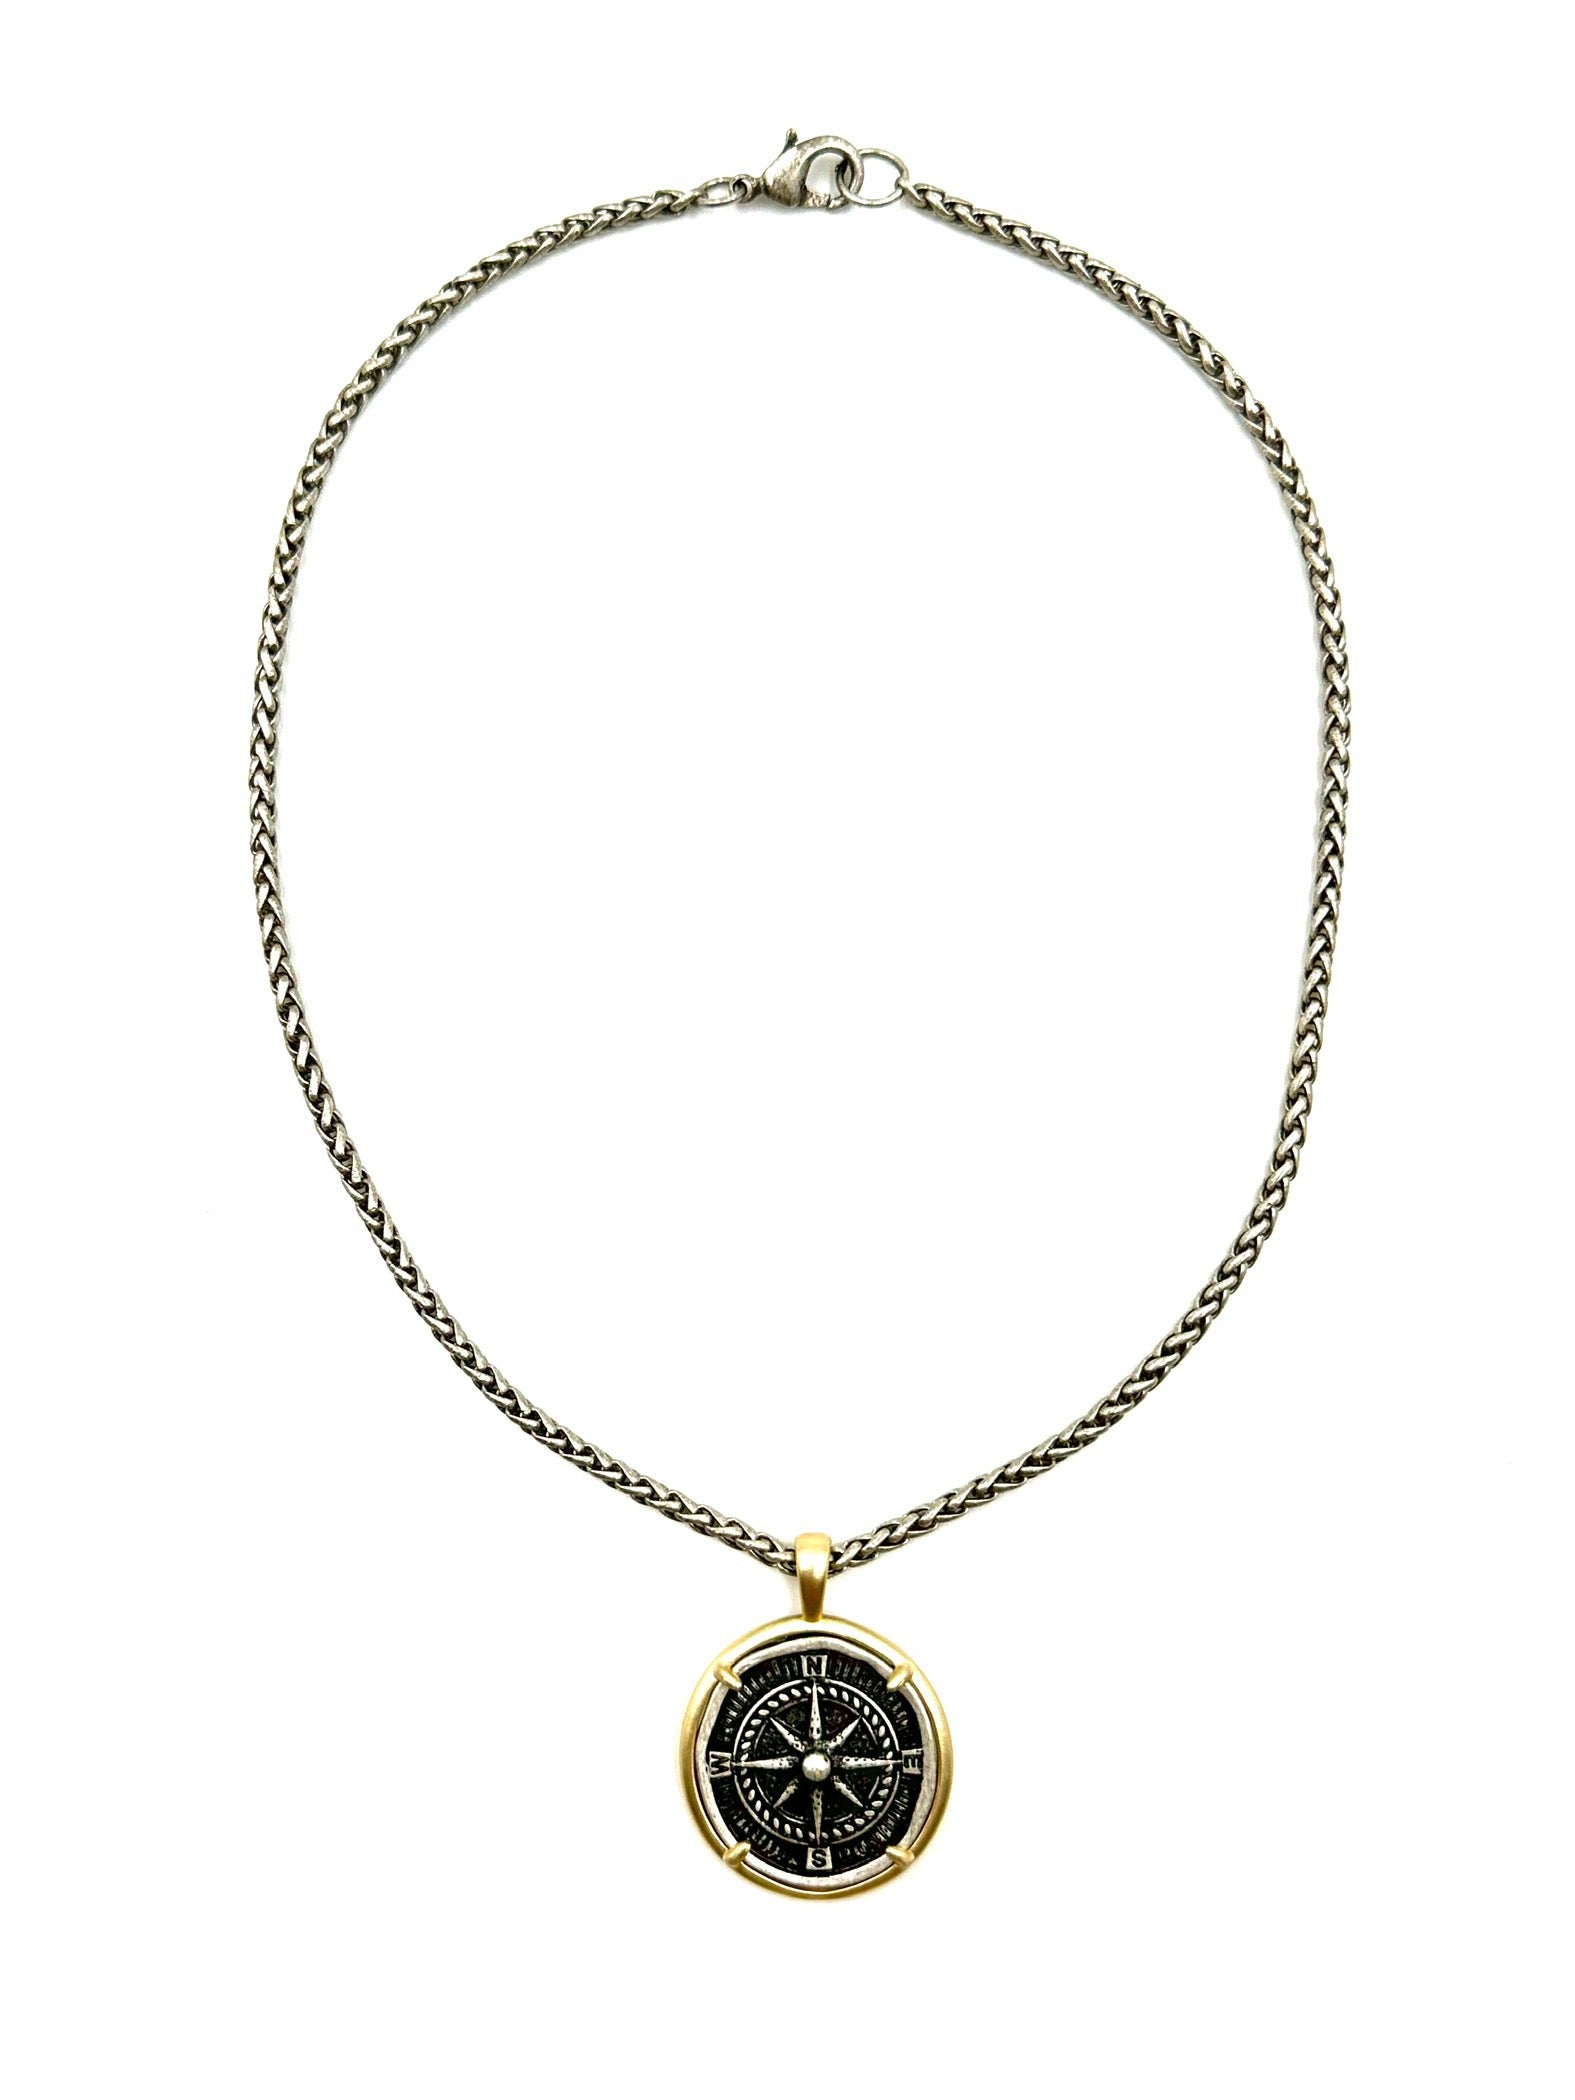 Compass necklace with bezel set compass pendant